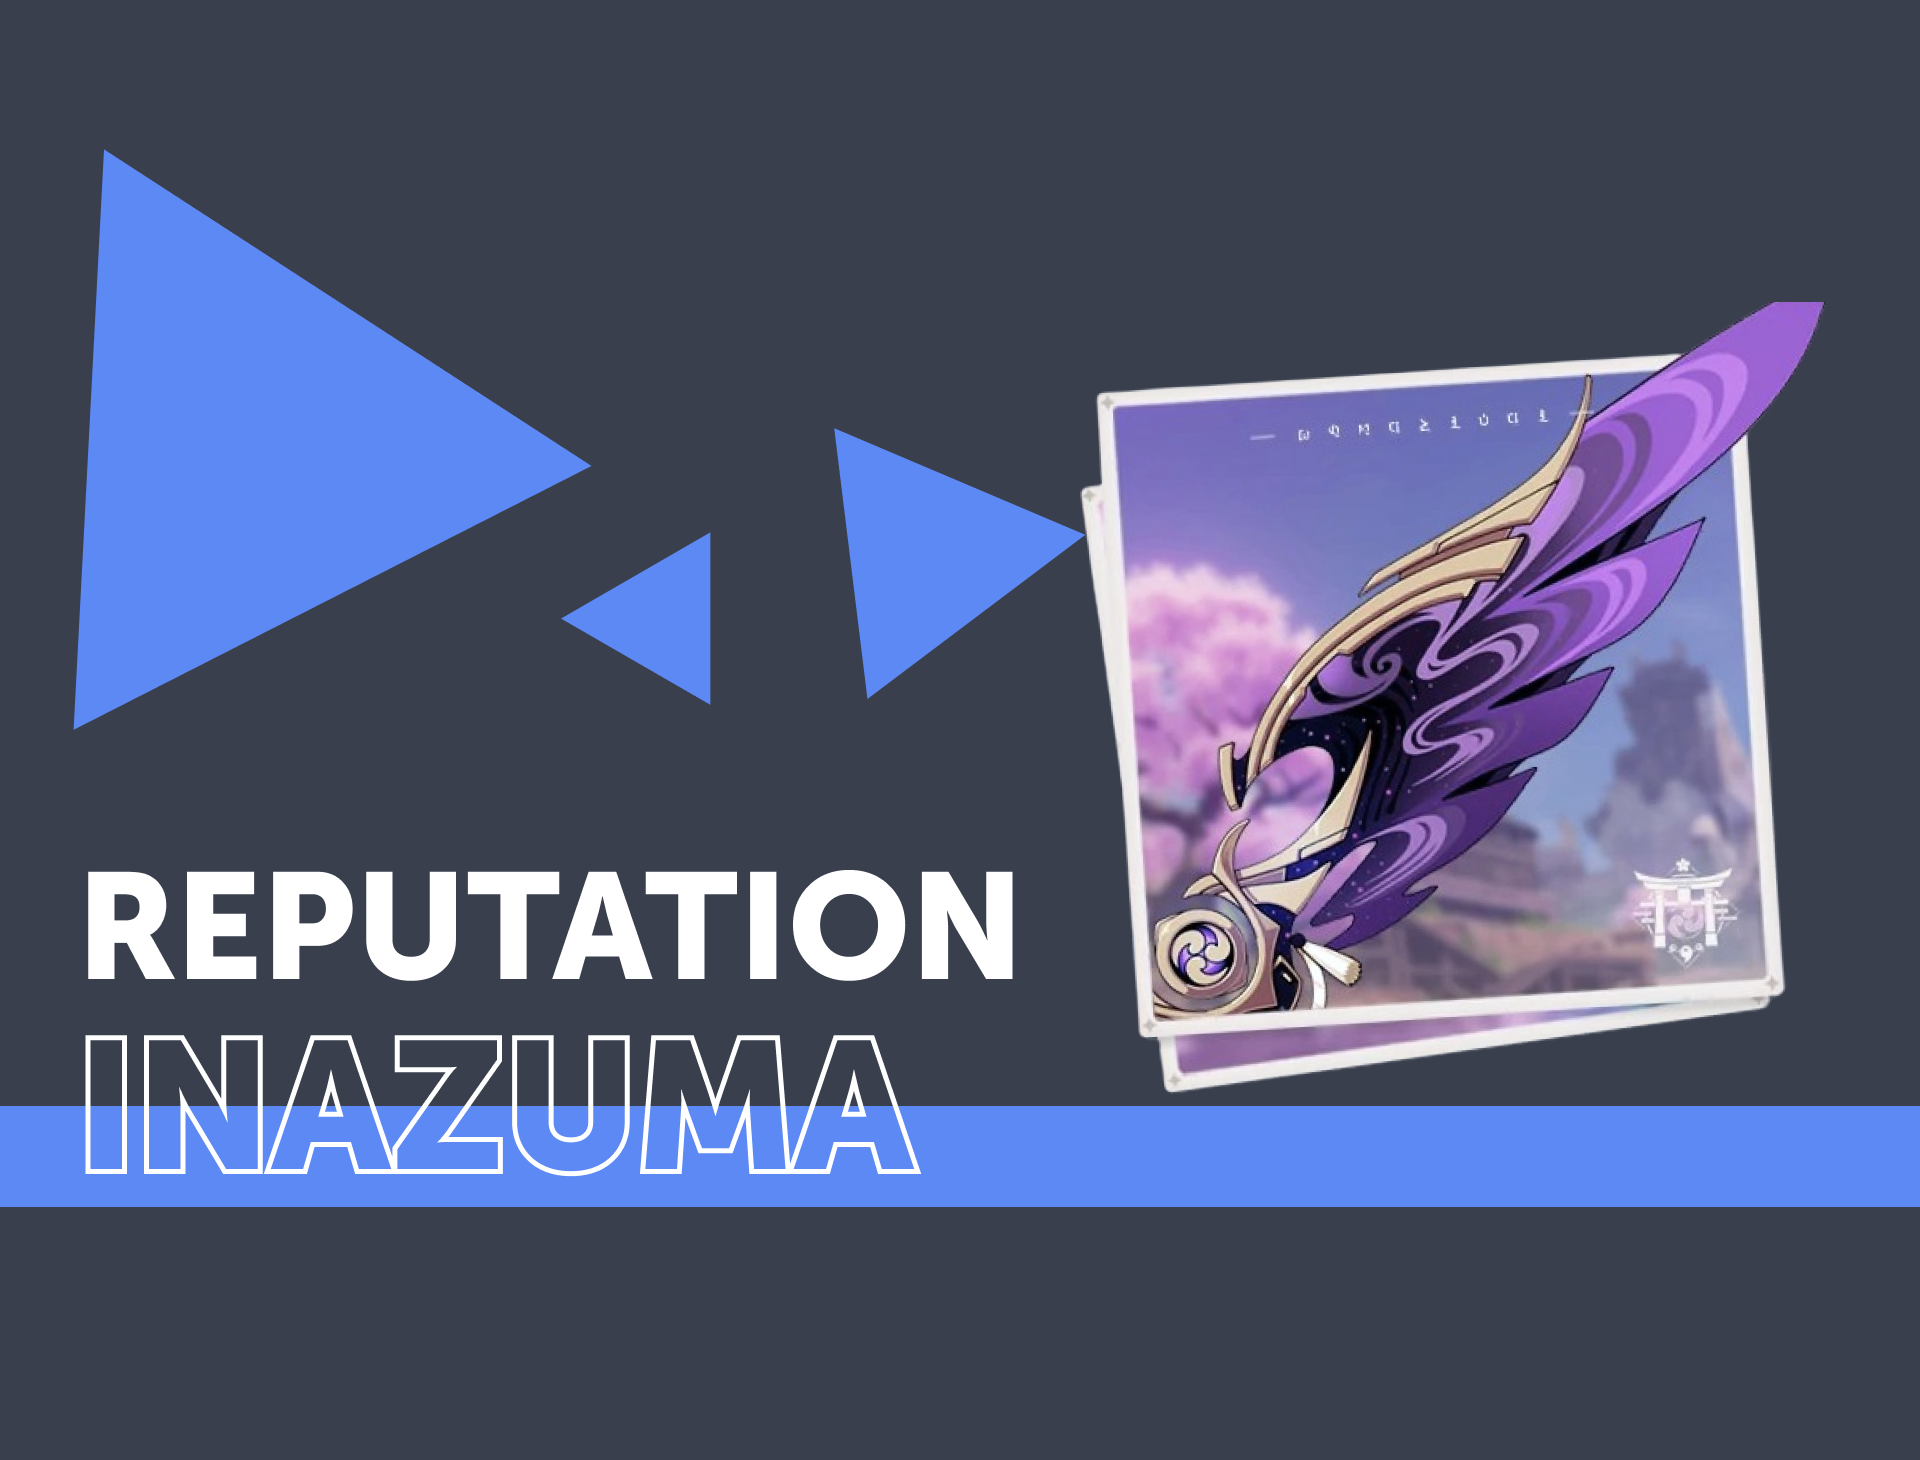 Inazuma Reputation Farm